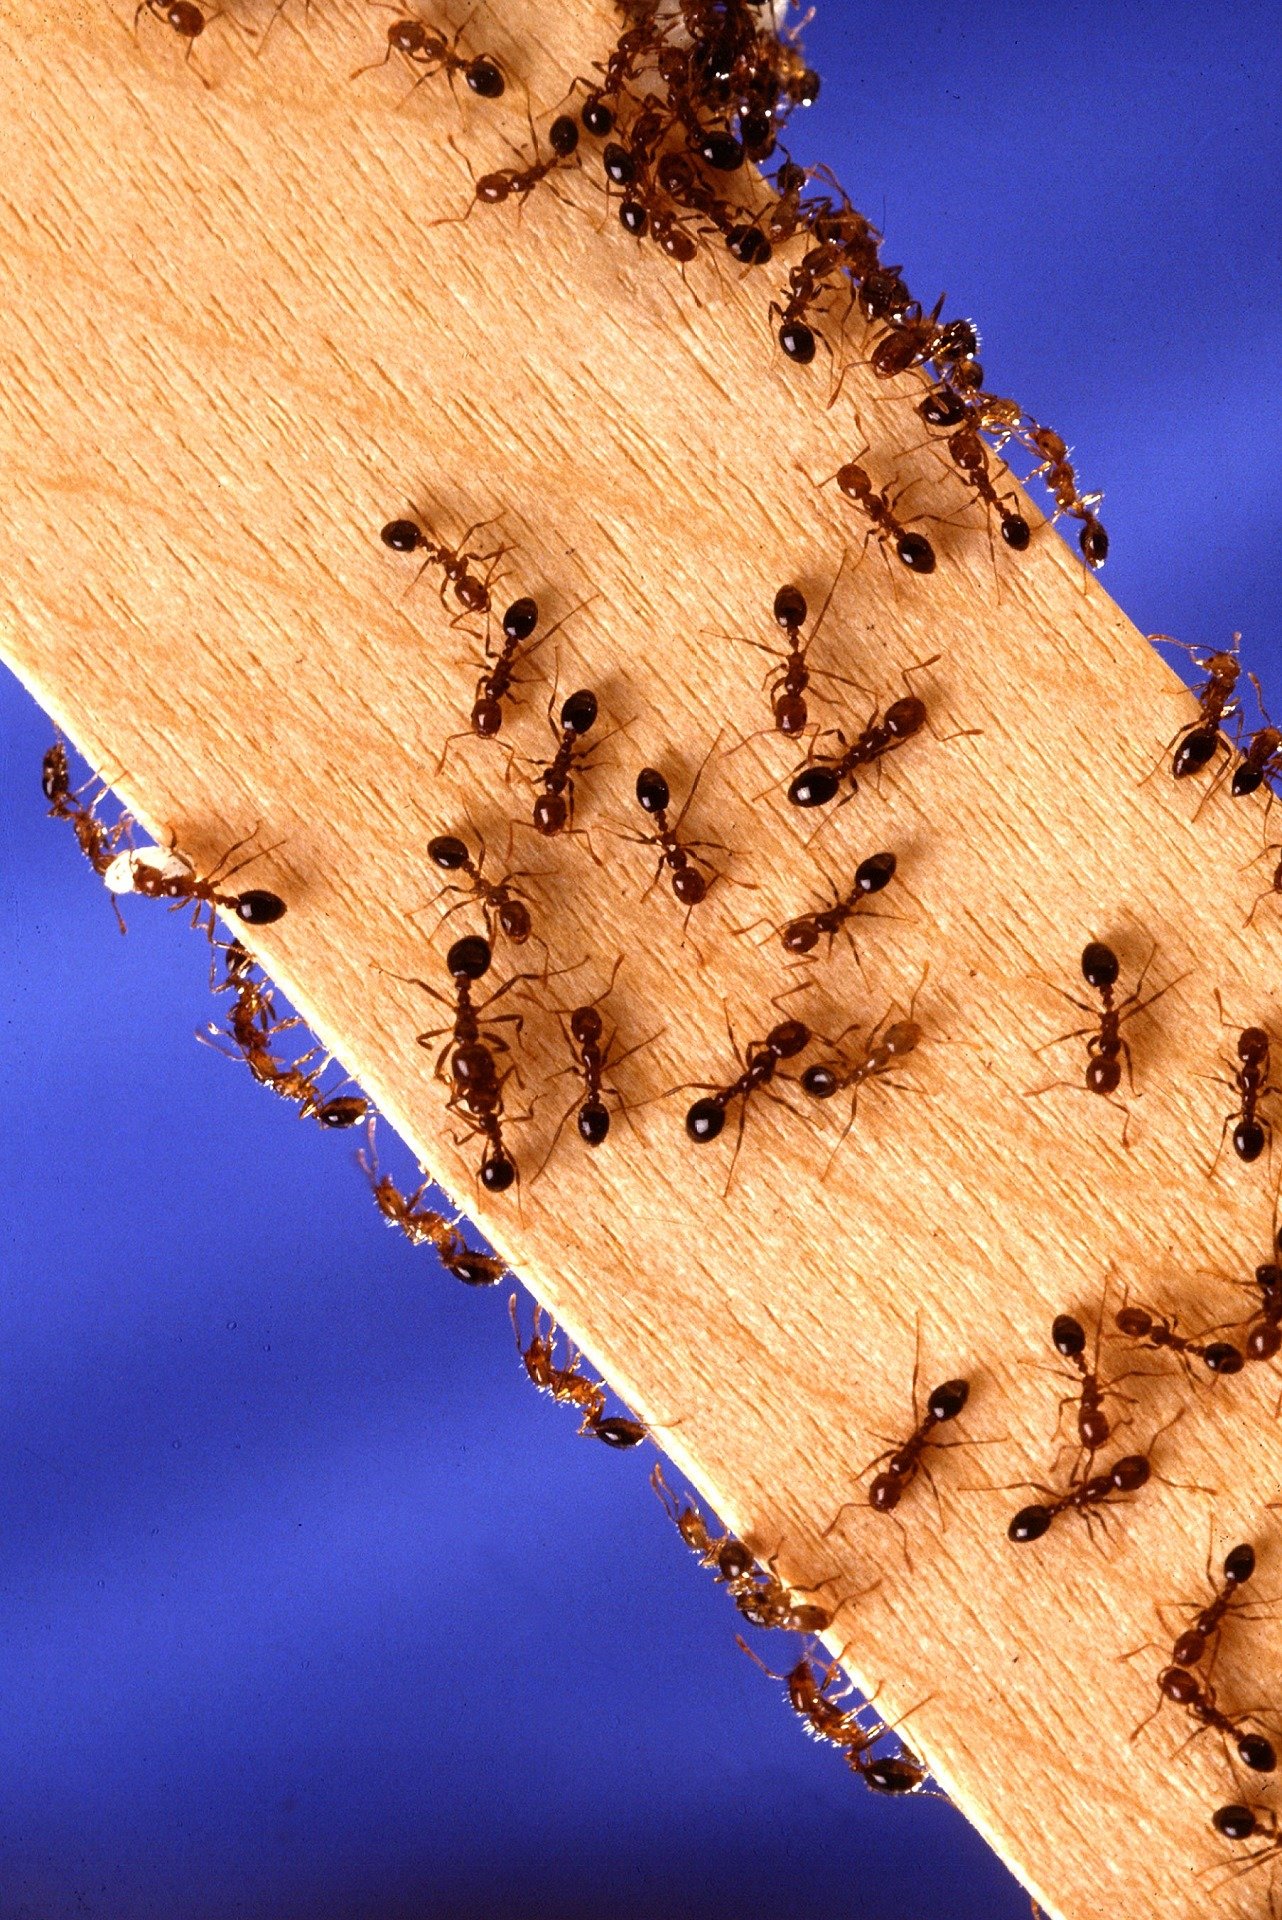 Los científicos han descubierto una nueva estructura de colonia para las hormigas de fuego que evolucionó en una especie antes de propagarse a otras especies